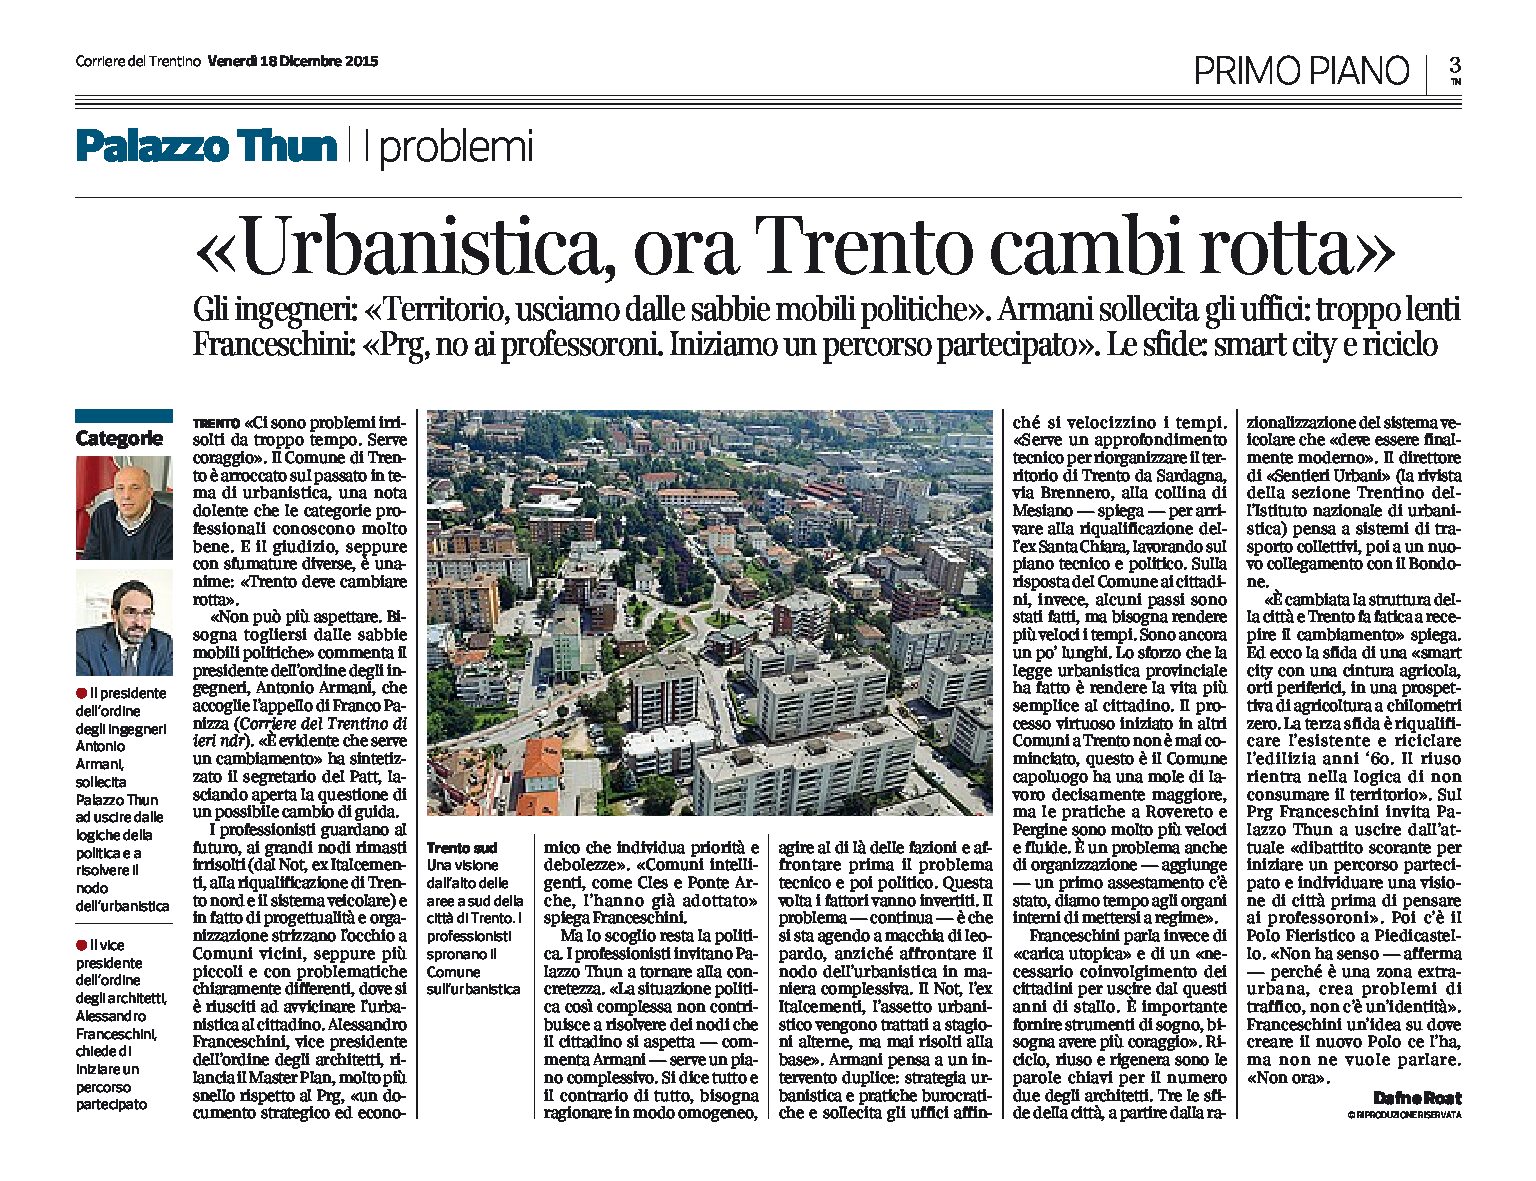 Urbanistica: Trento deve cambiar rotta e uscire dalle sabbie mobili politiche